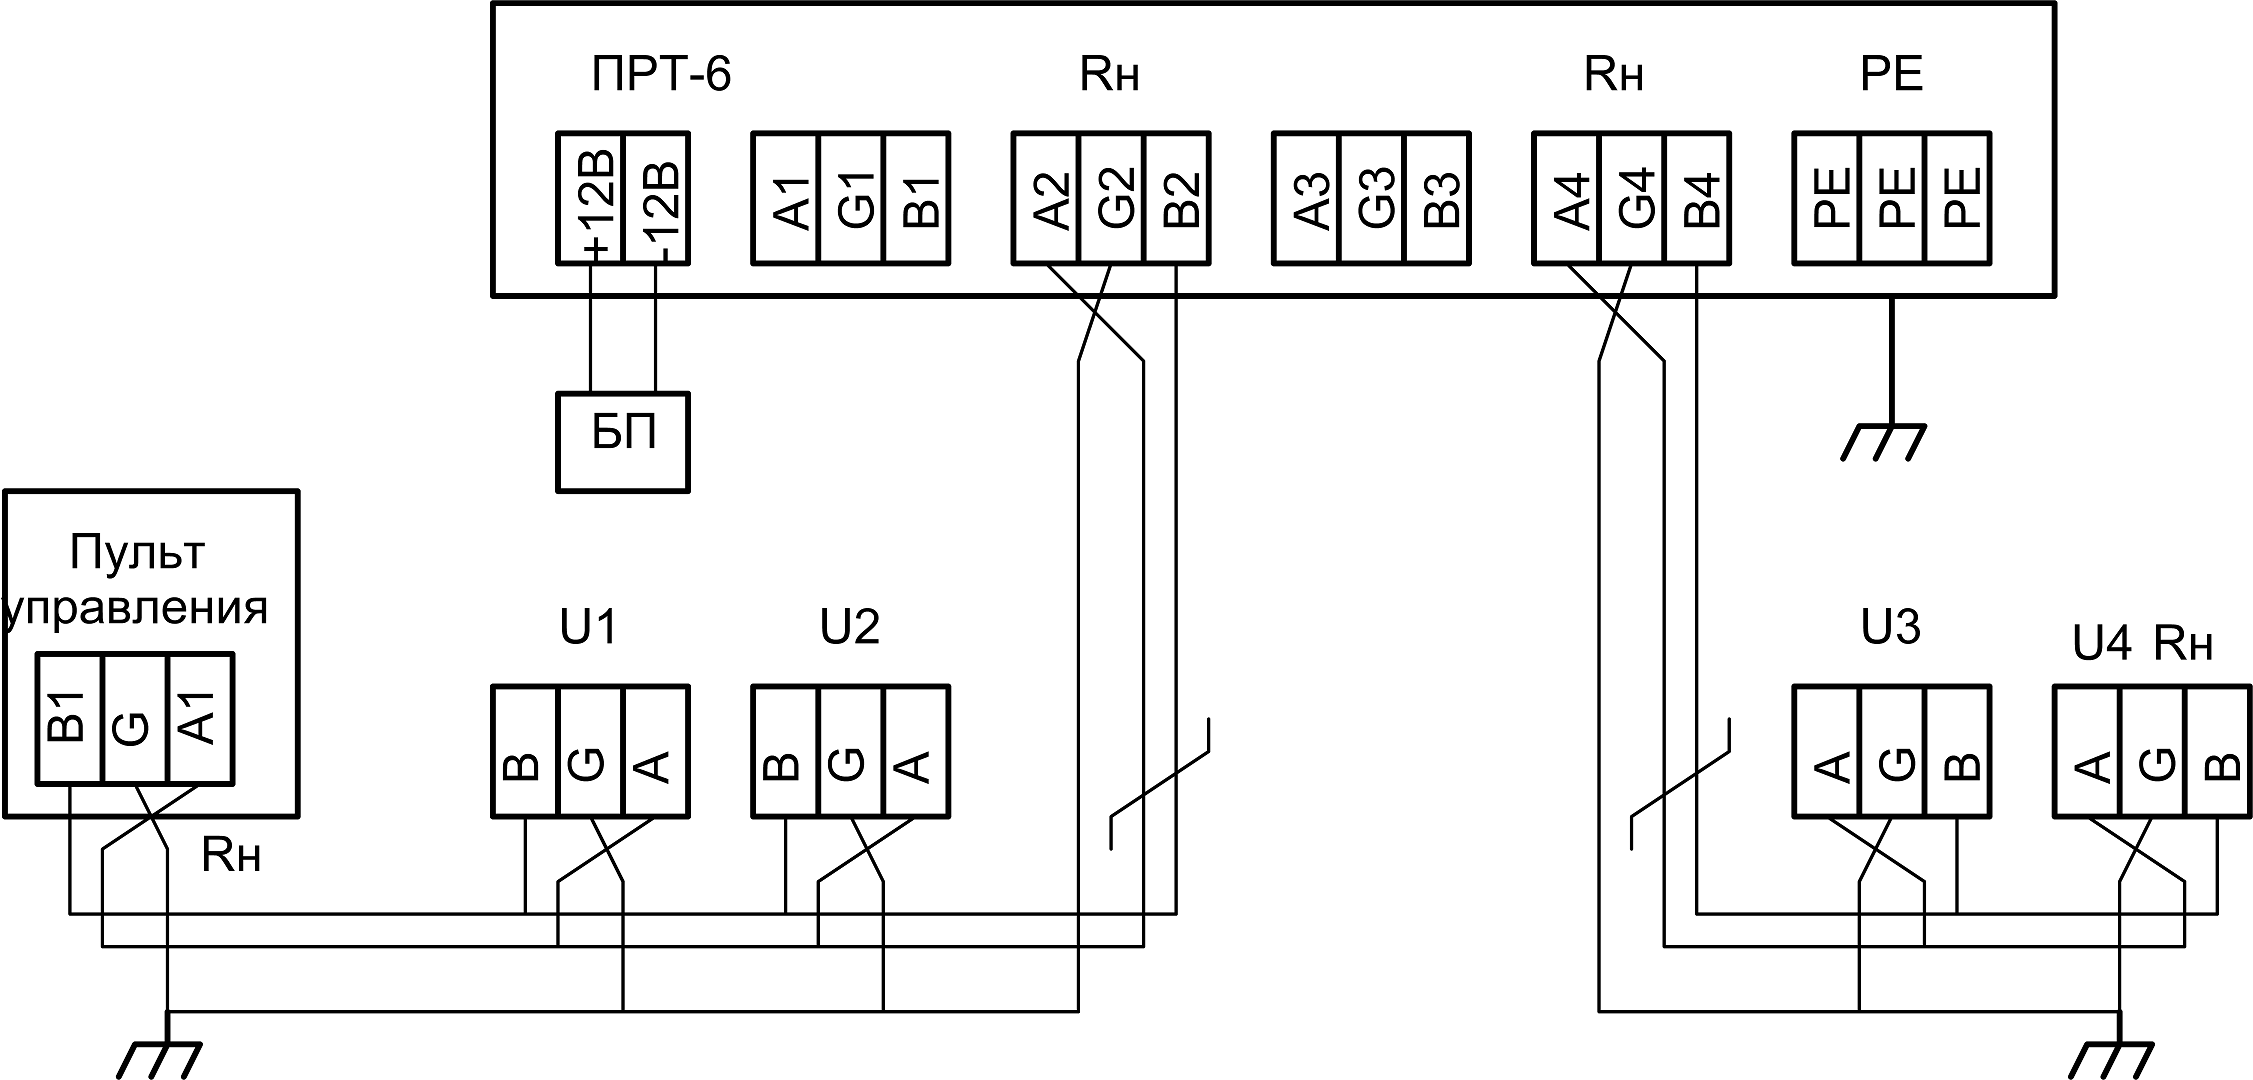 Пример использования ПРТ-1/3, как повторитель интерфейса RS-485